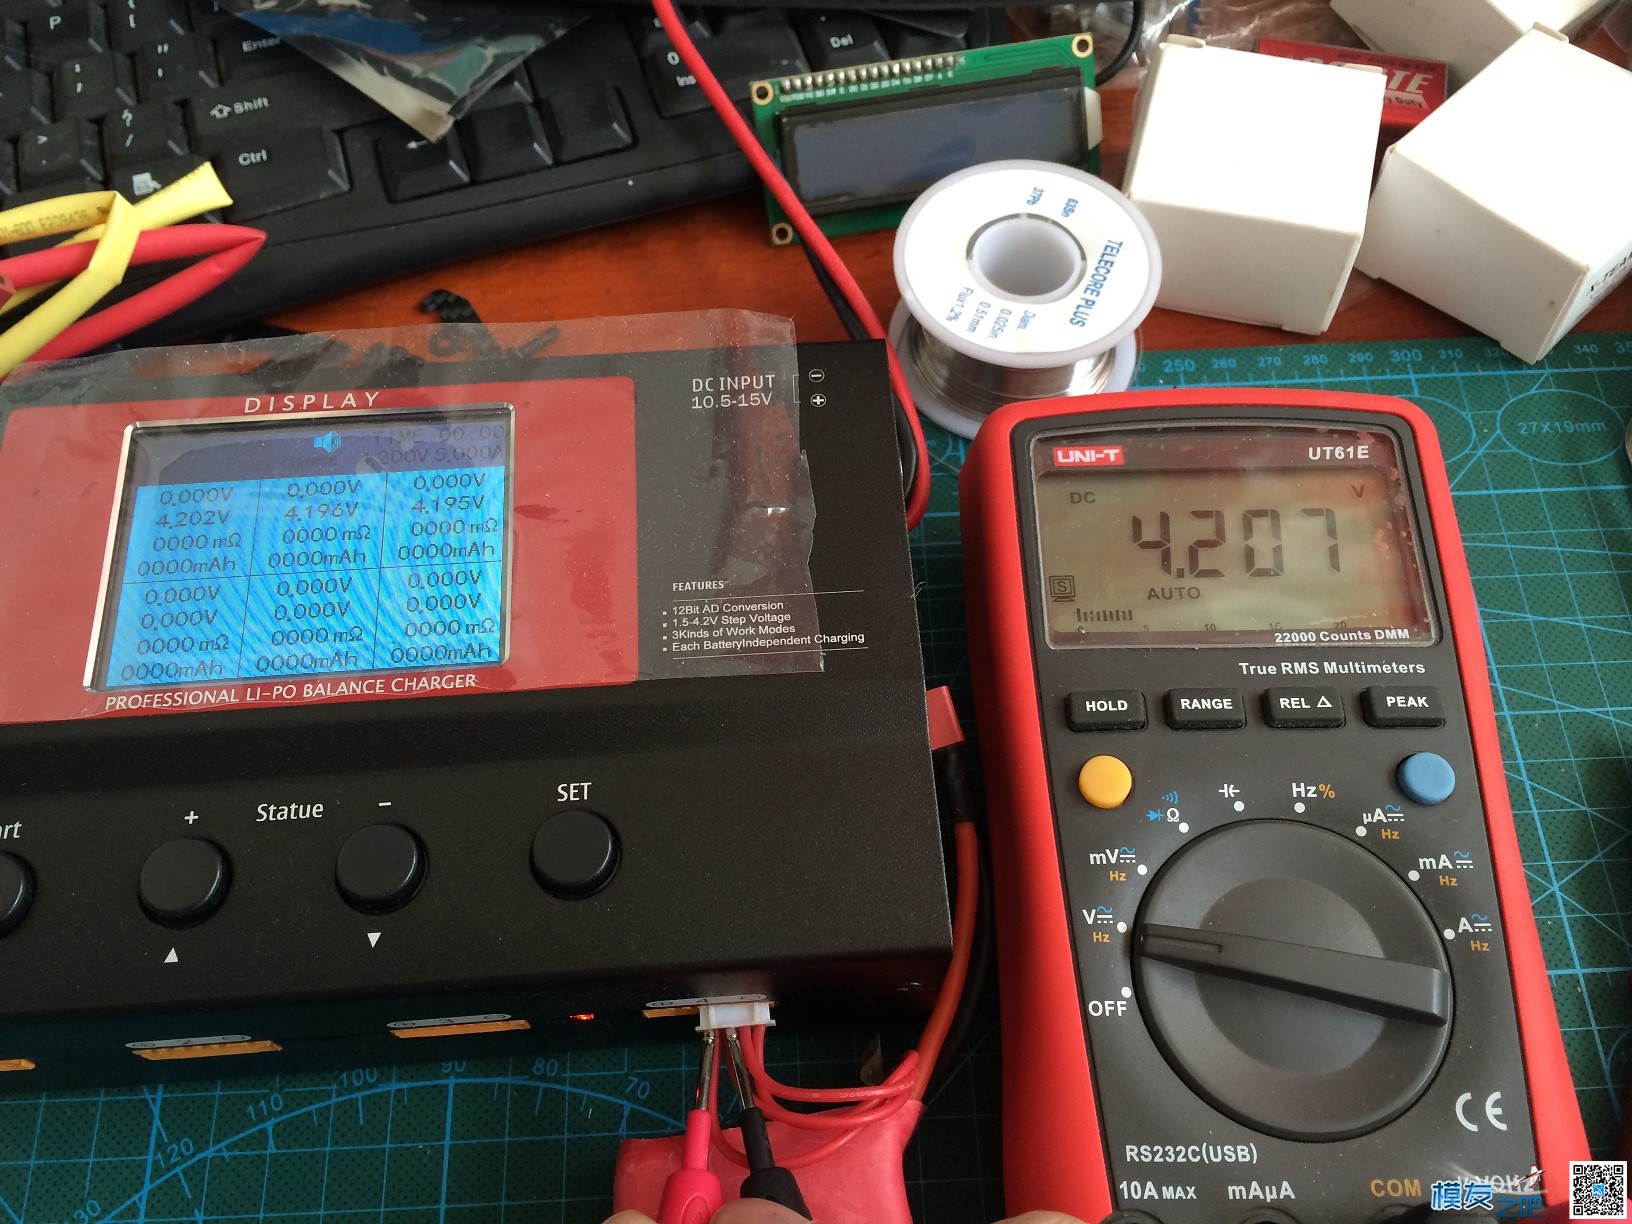 【MOZ8】乐迪CB86完全拆解对比测评 电池,充电器,开源,乐迪,固件 作者:一点痕迹 5317 